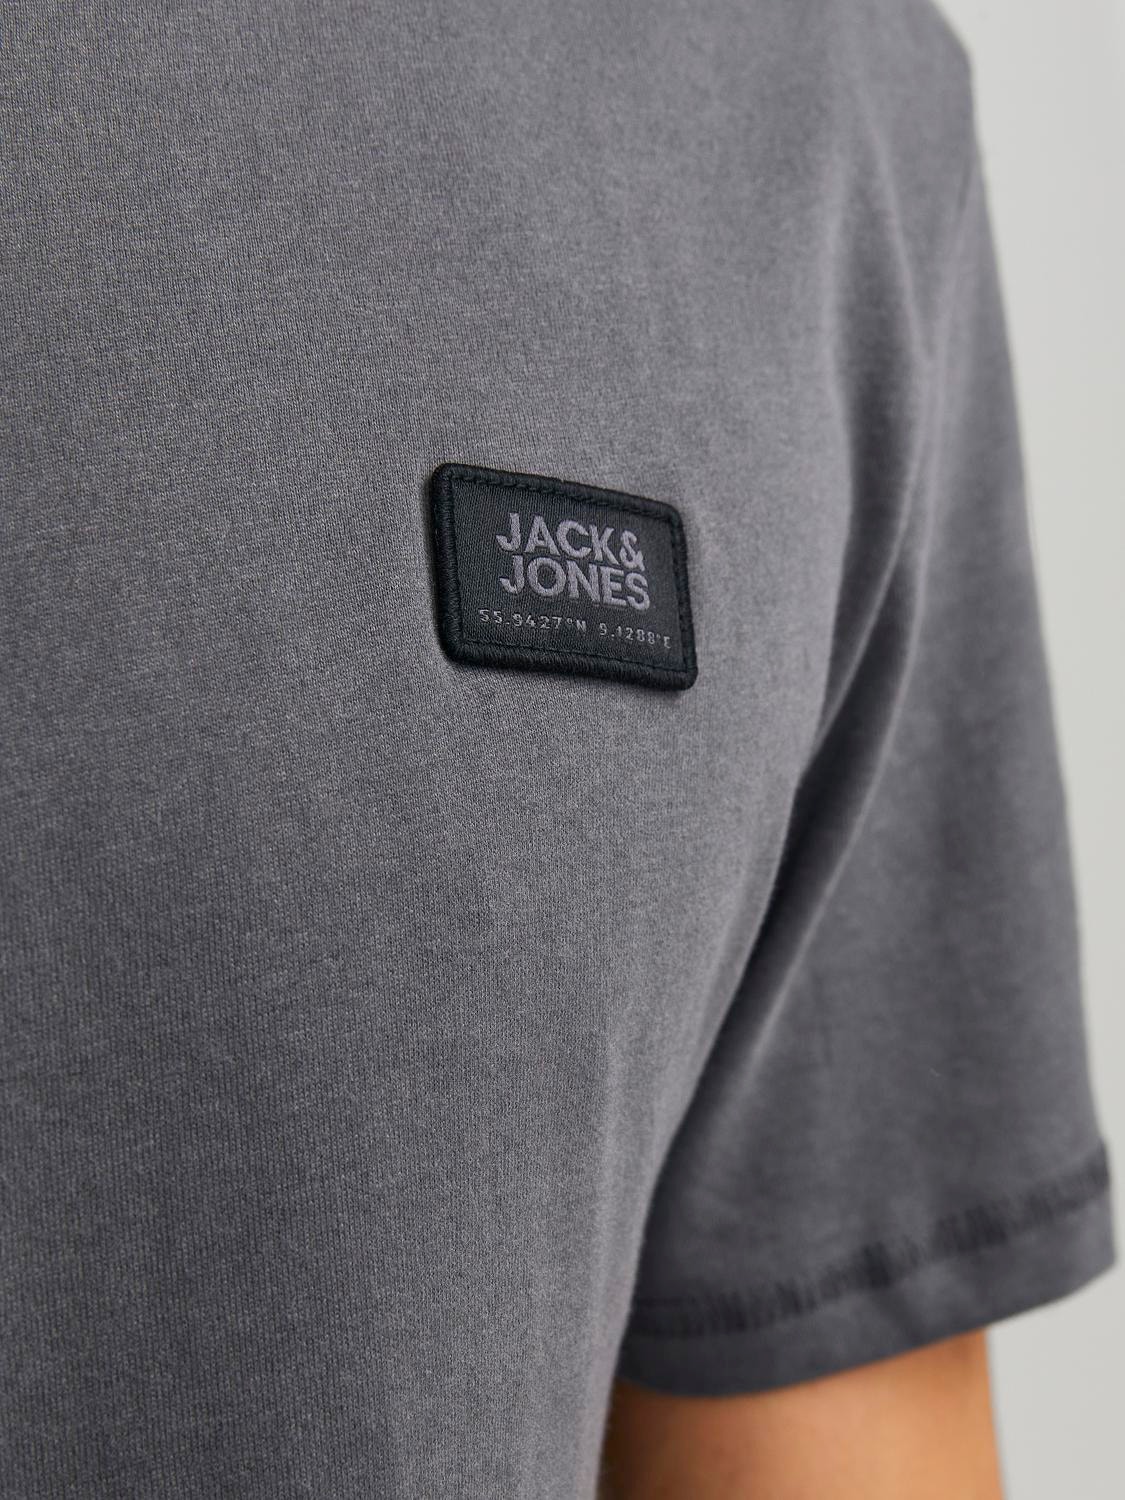 Jack & Jones Logo Crew neck T-shirt -Asphalt - 12240266